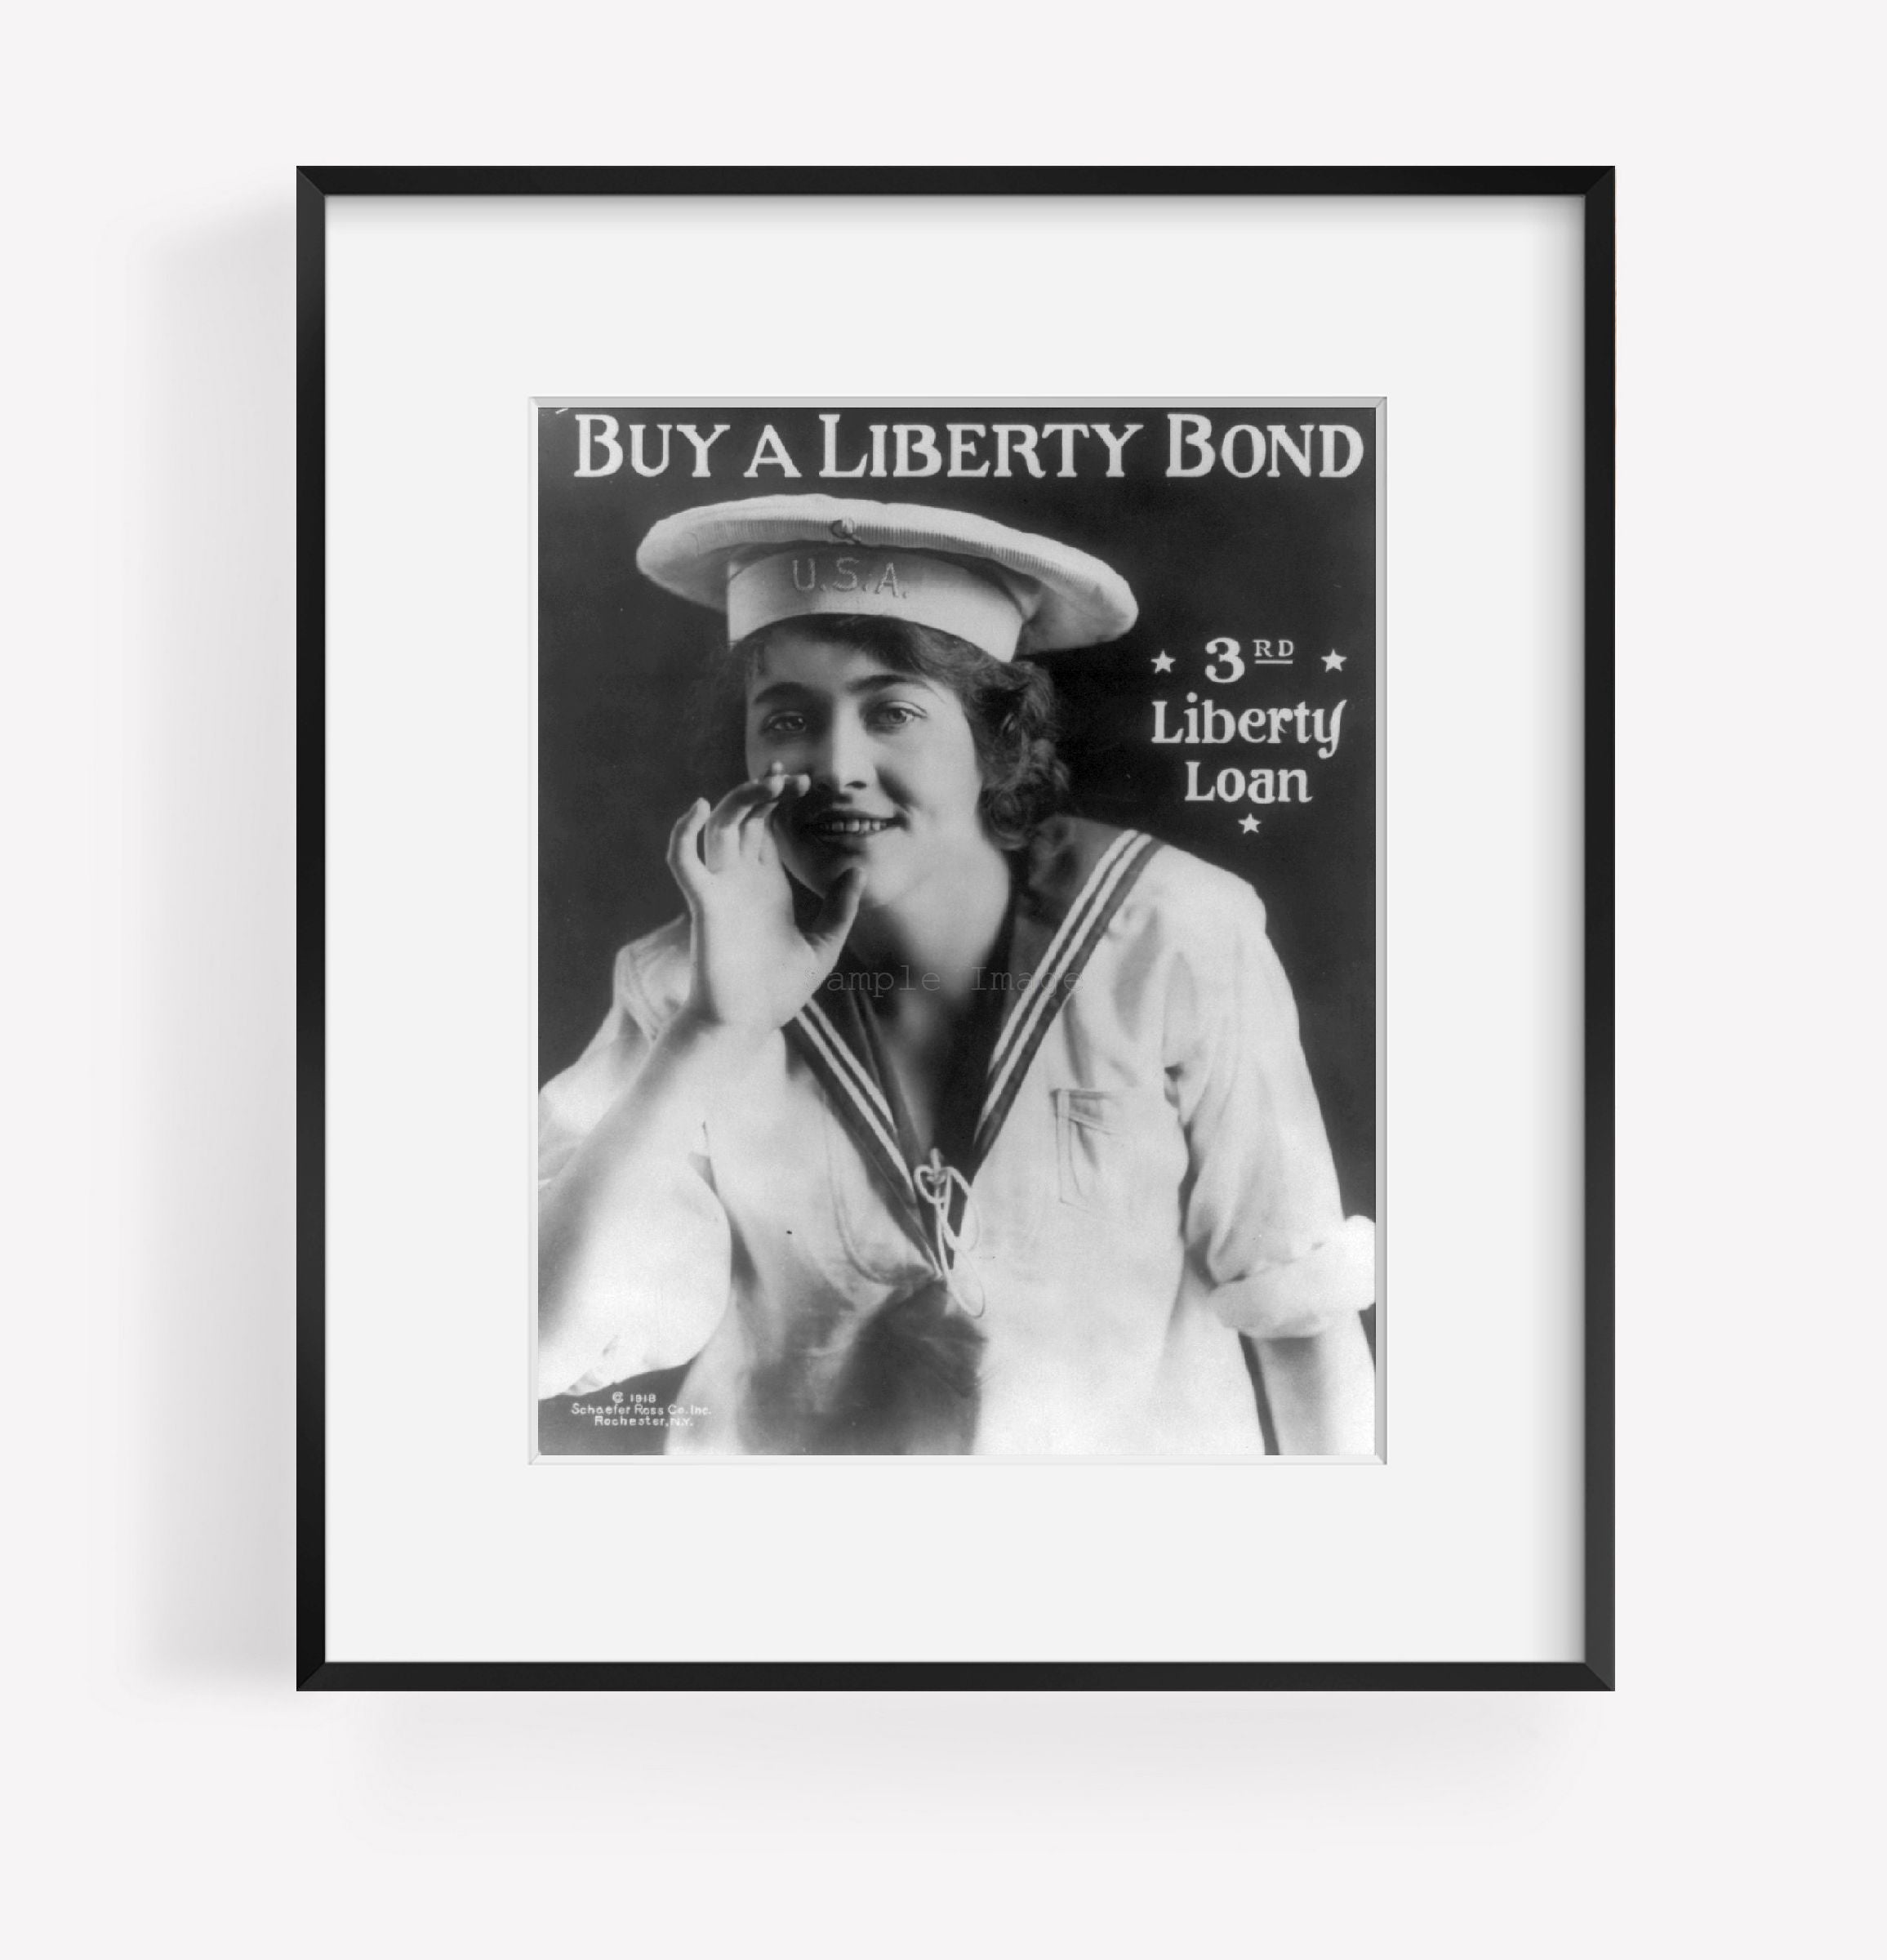 Photo: Buy a Liberty Bond, 3rd Liberty Loan, sailor suit, c1918